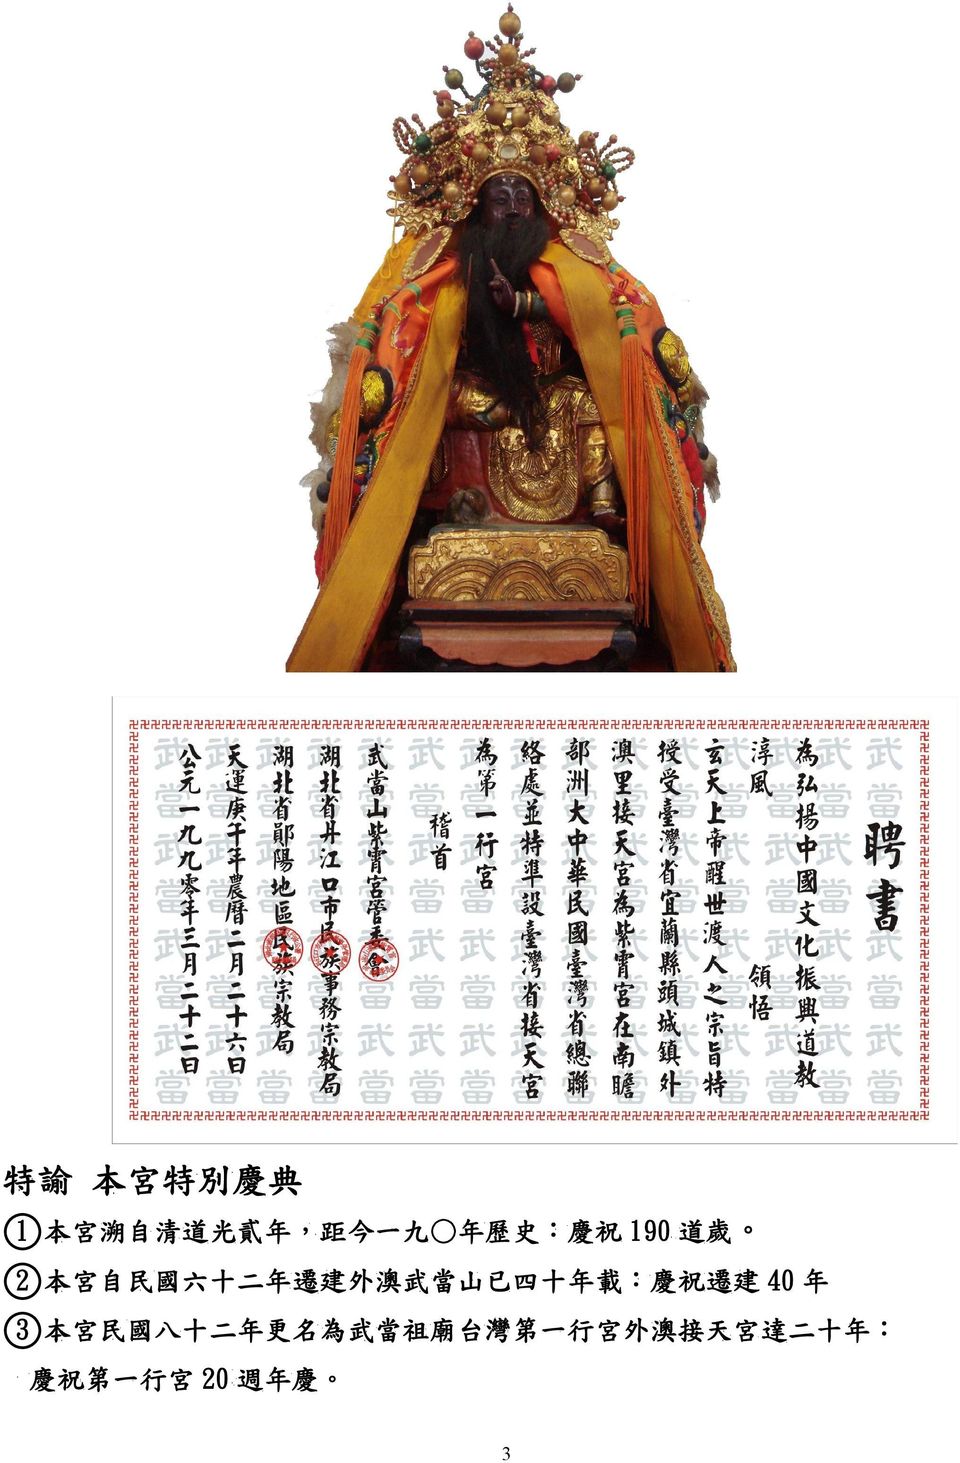 載 : 慶 祝 遷 建 40 年 3 本 宮 民 國 八 十 二 年 更 名 為 祖 廟 台 灣